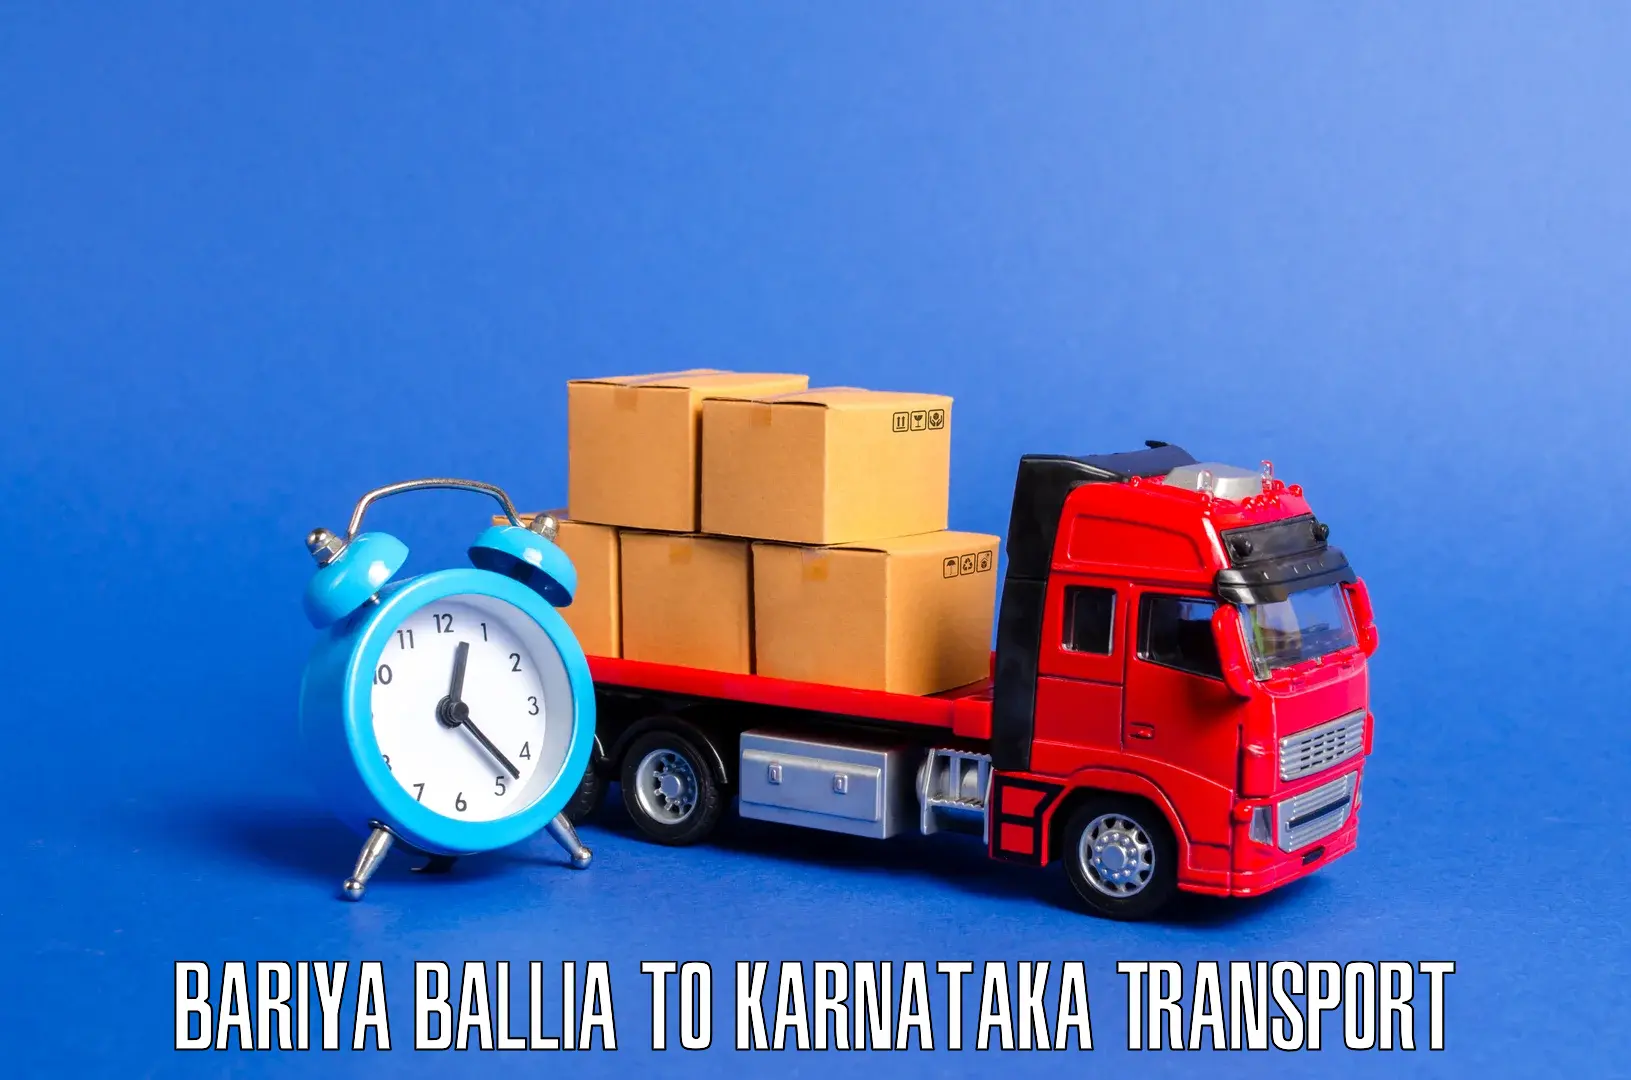 Goods delivery service Bariya Ballia to Mundgod